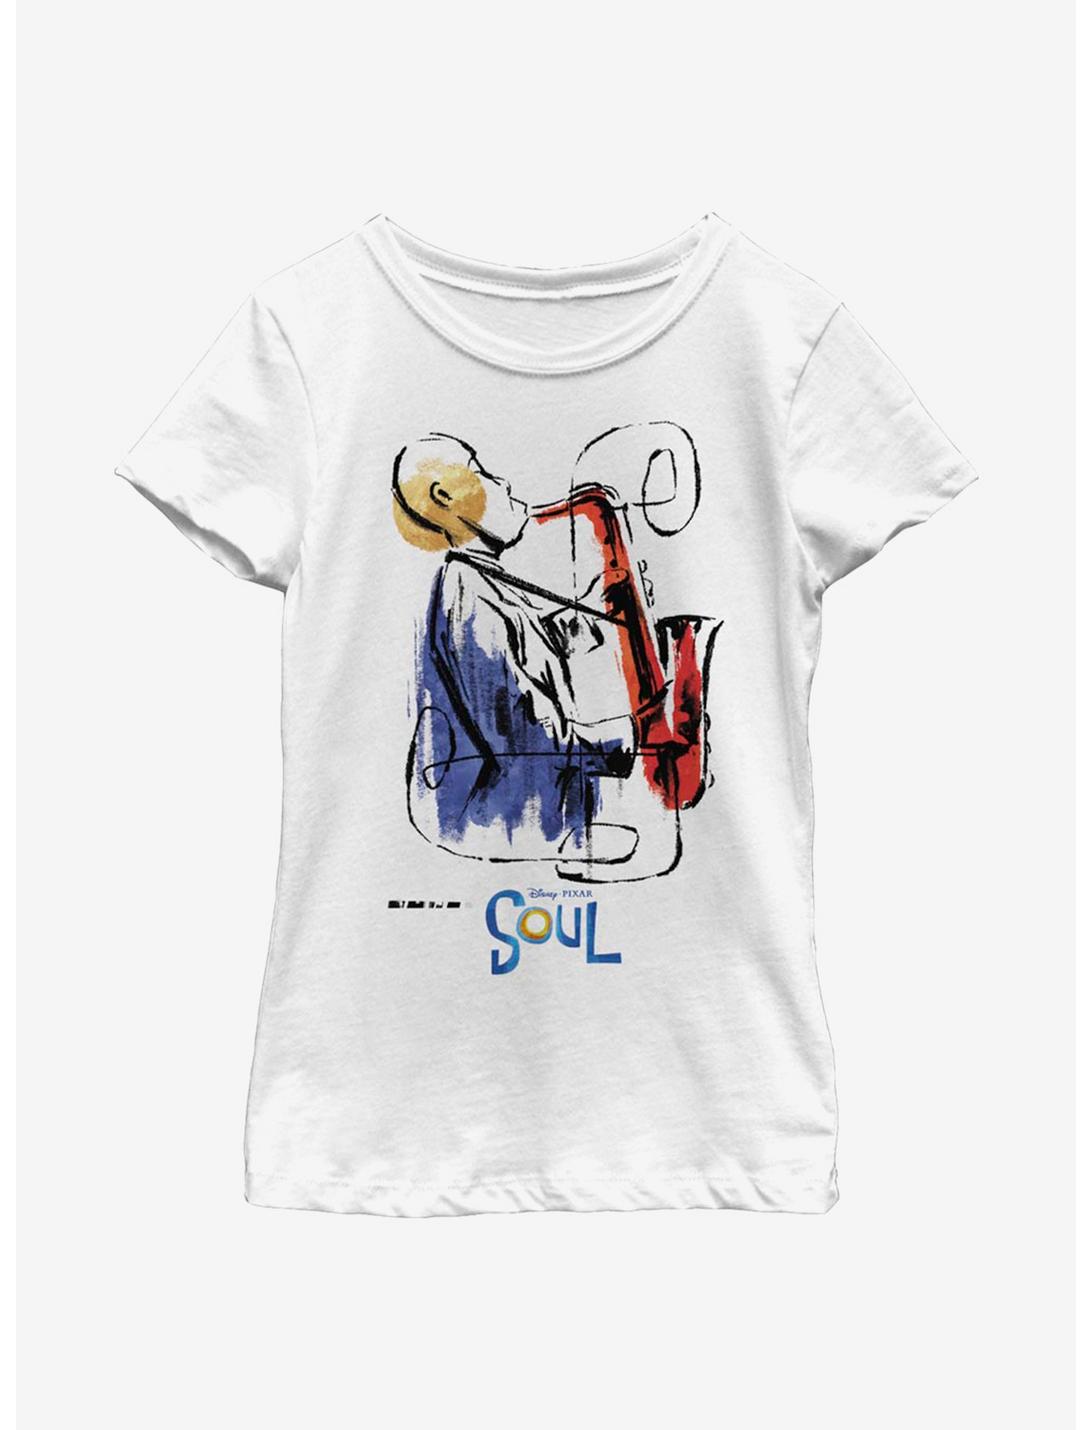 Disney Pixar Soul Saxophone Painting Youth Girls T-Shirt, WHITE, hi-res